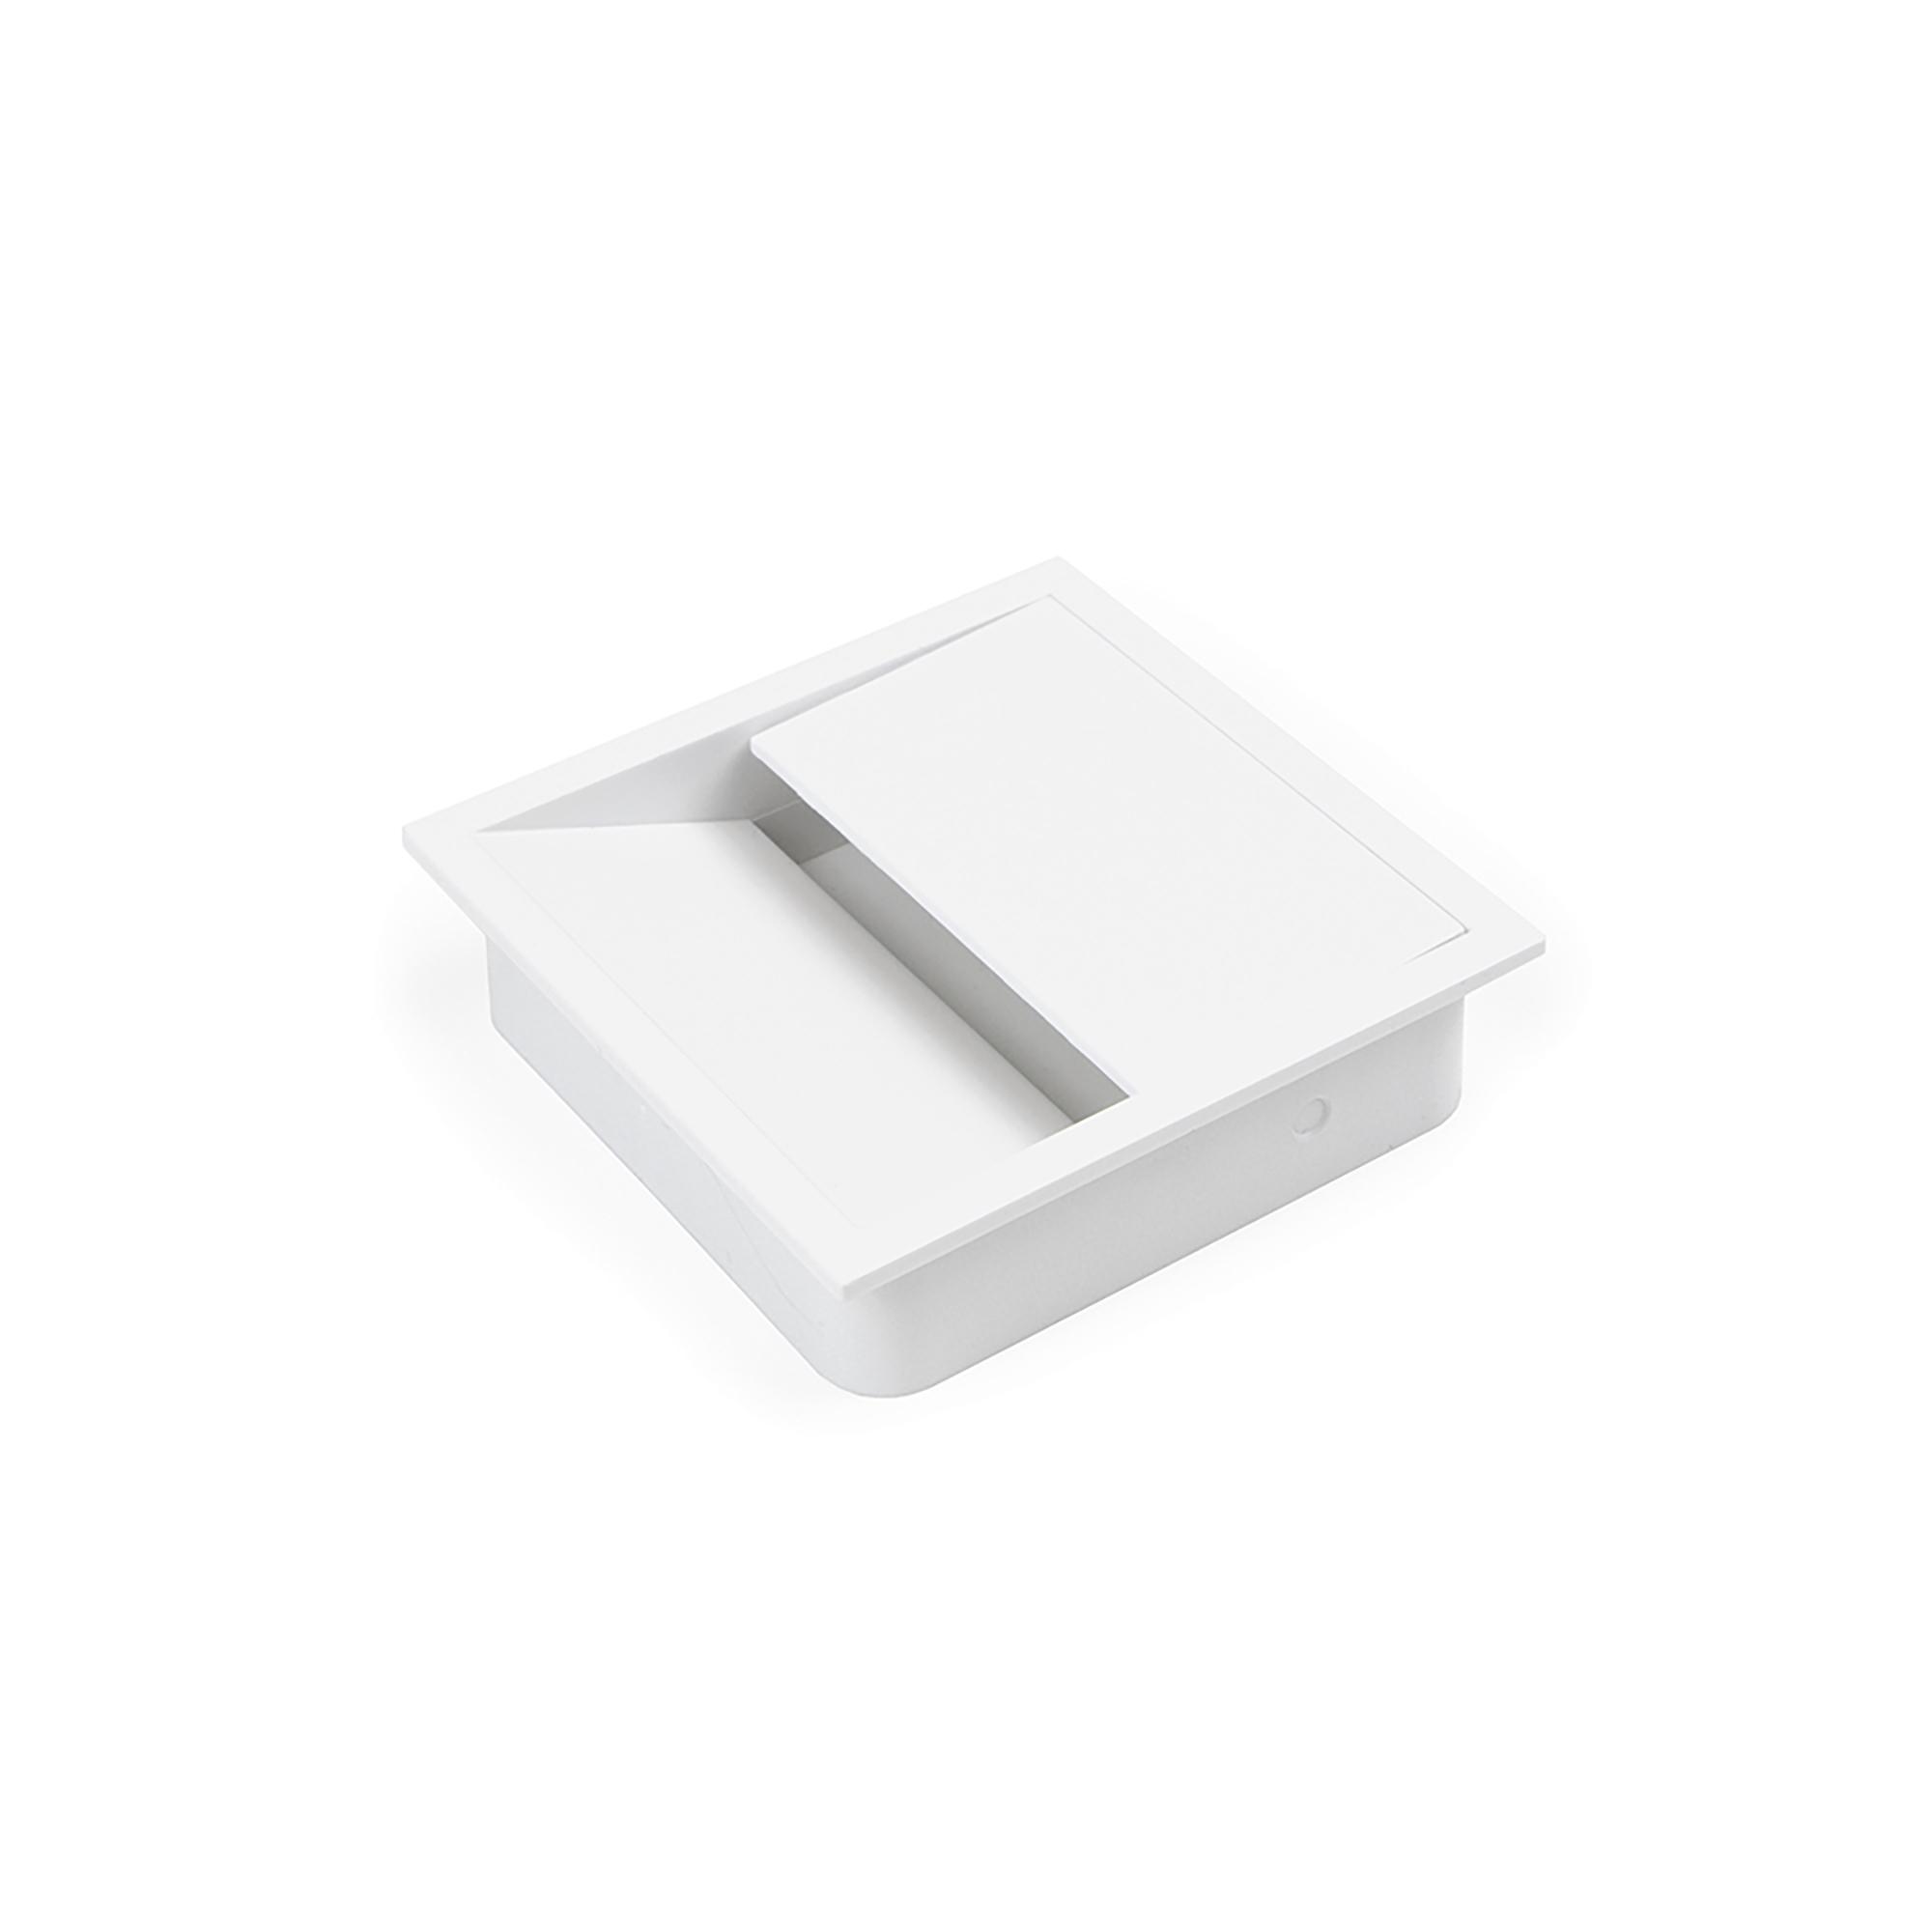 UP & DESK passe-câble horizontale (blanc) - Accessoires et